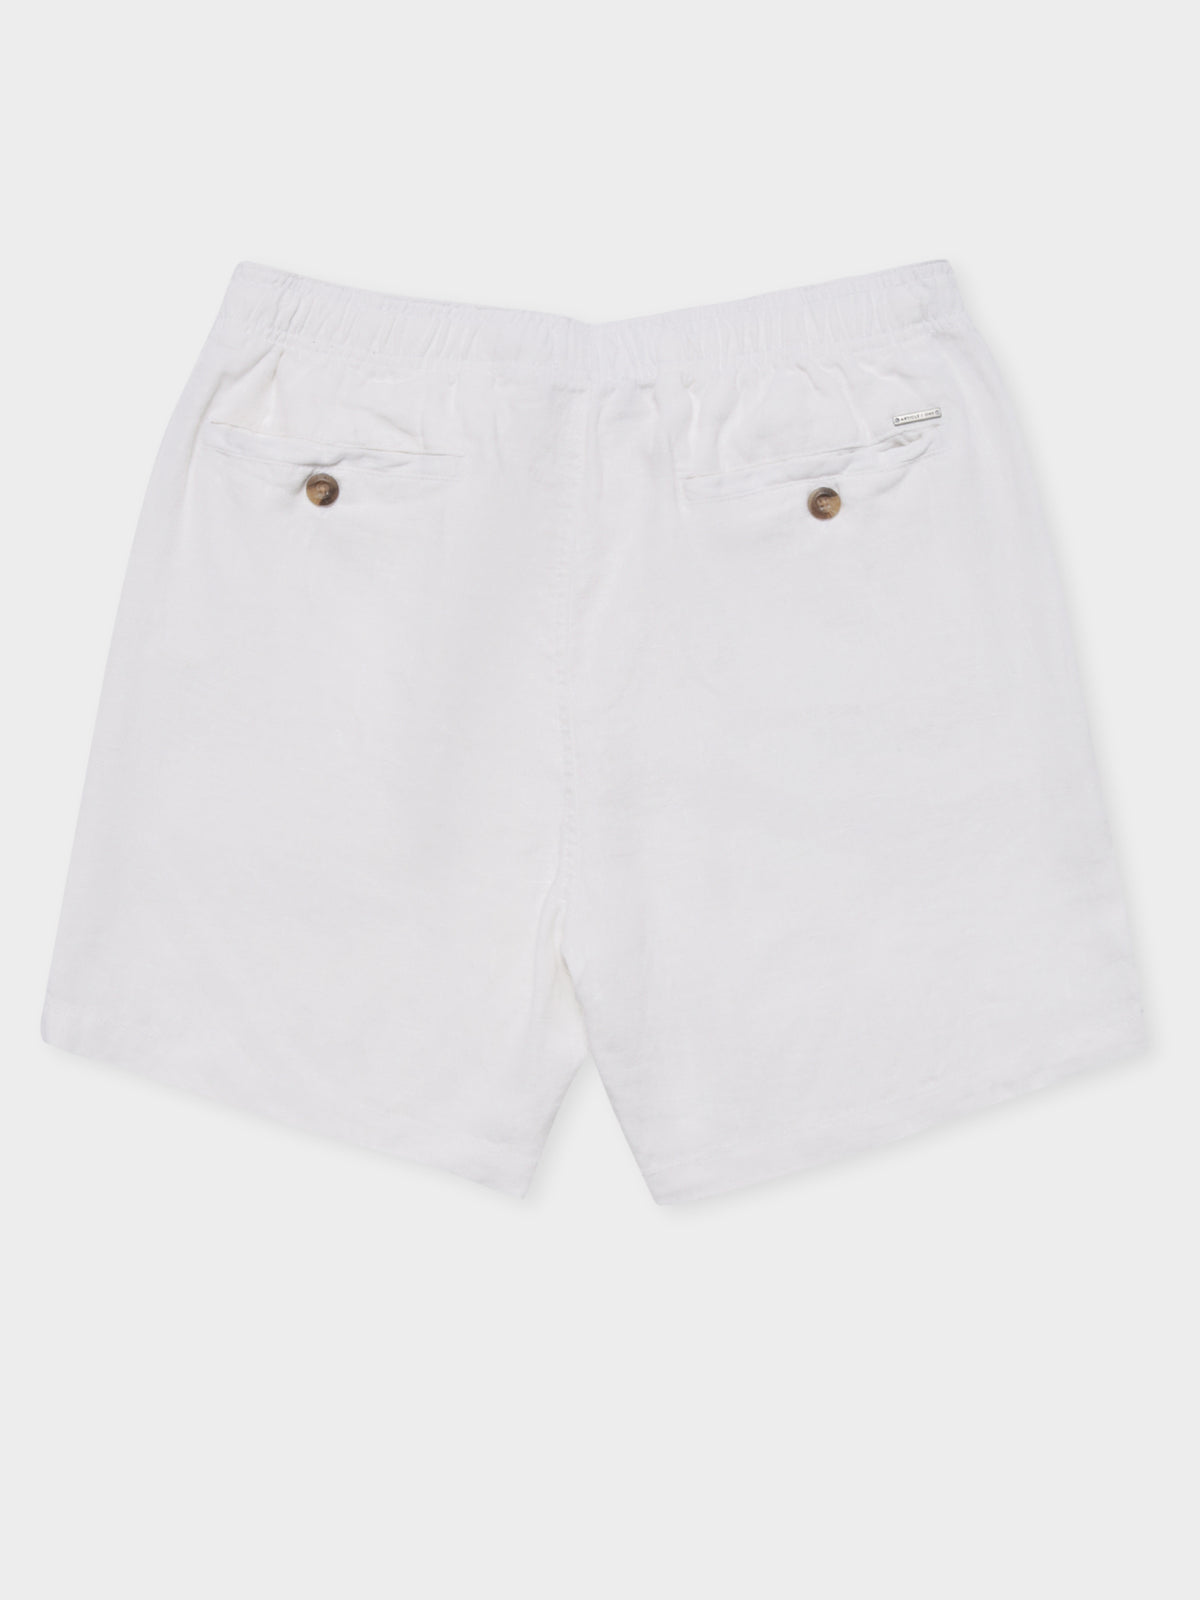 Nelson Linen Shorts in White